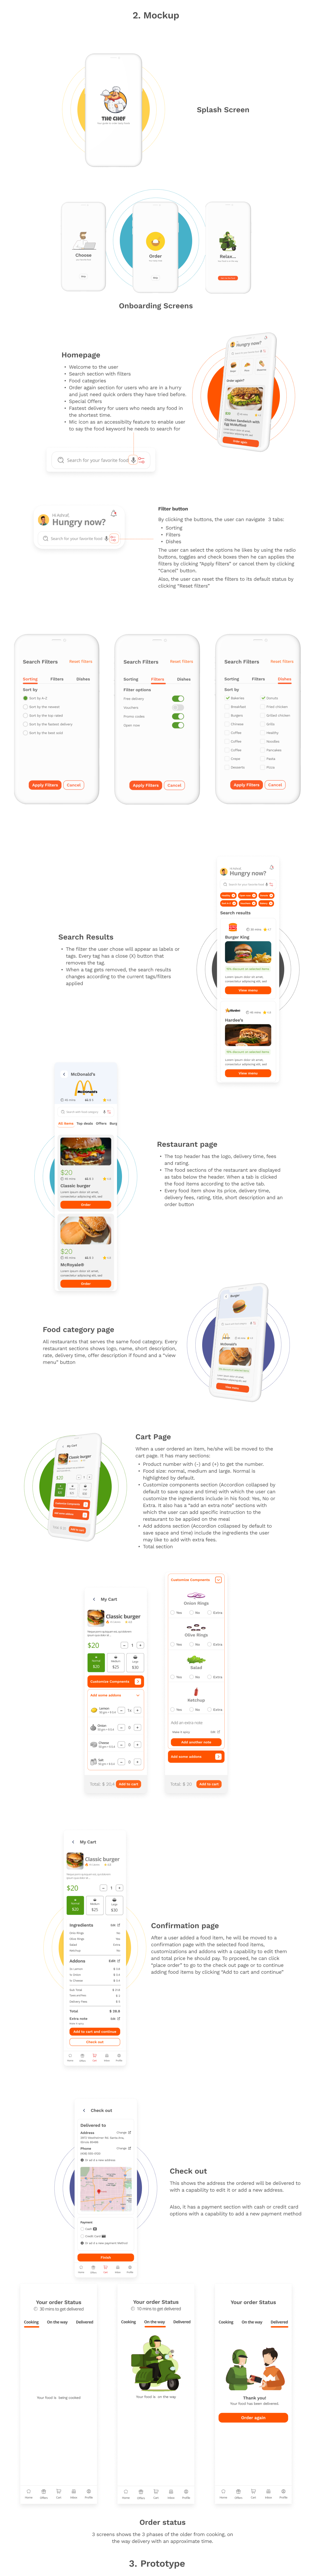 UX design UX Case Study UI/UX Mobile app user interface Figma ui design food app delivery restaurant